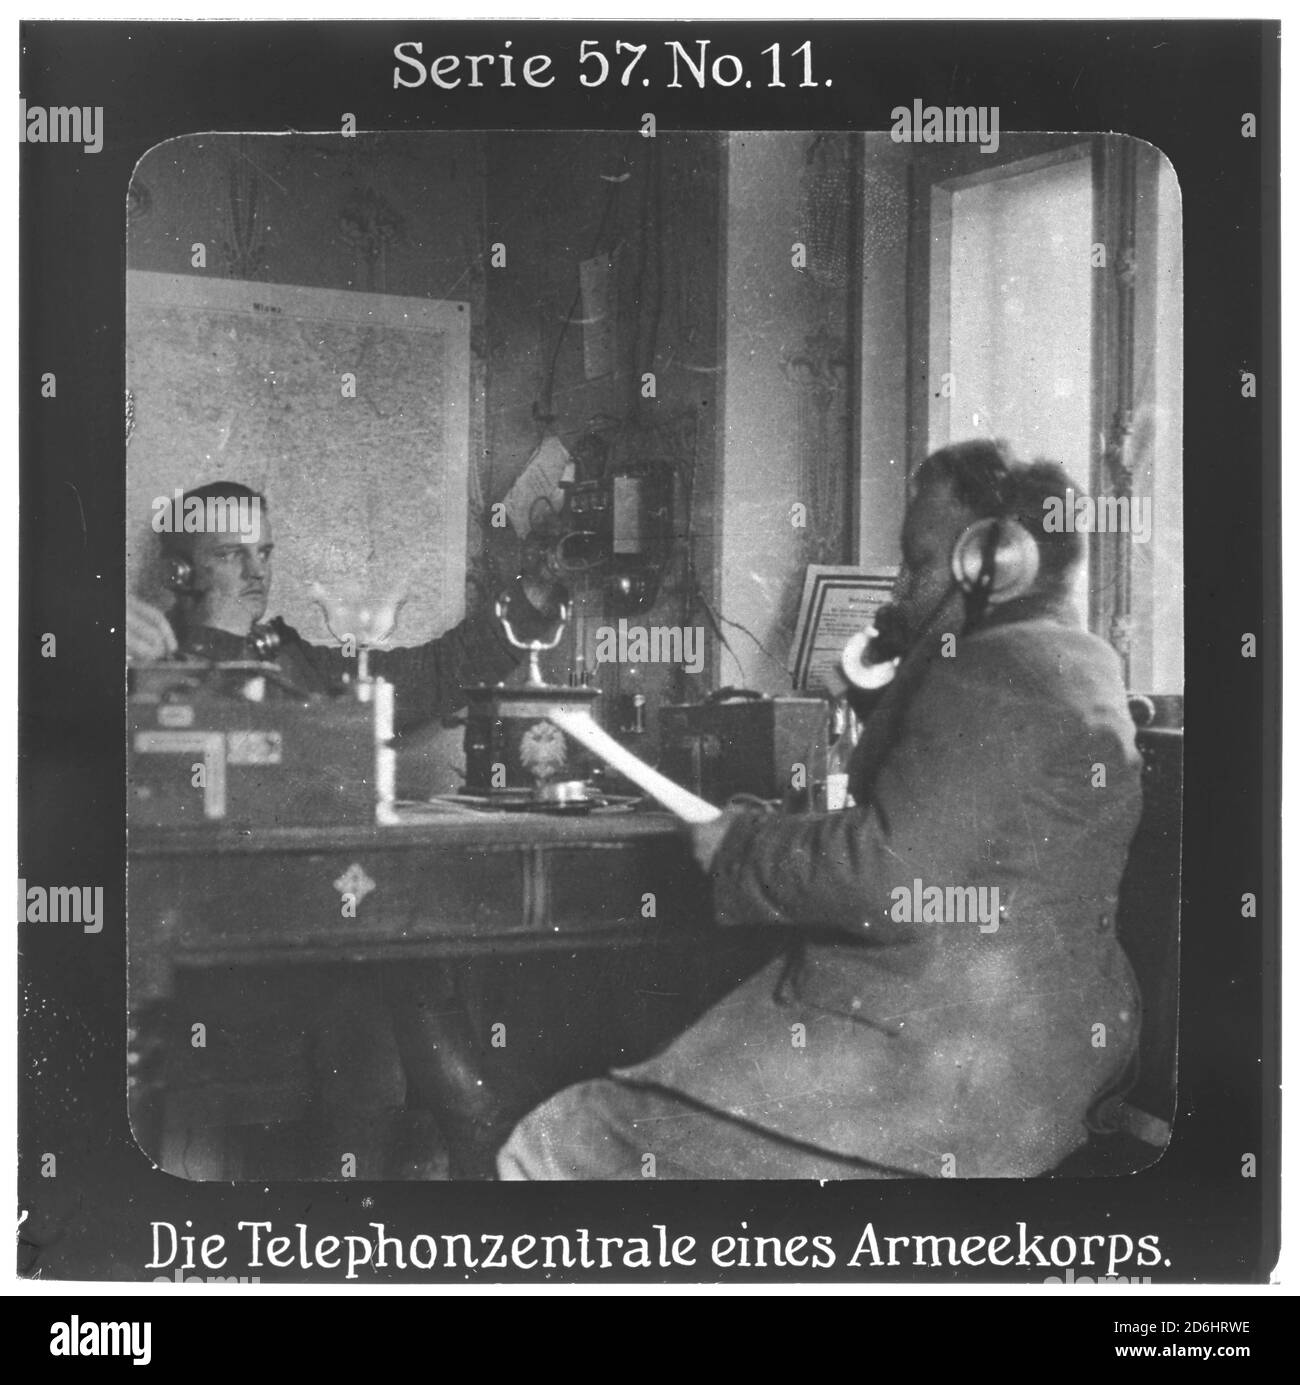 Proiezione für alle - Die Eroberung Serbiens. Serie 57. N. 11. Die Telephonzentrale eines Armeekorps. Nach dem Scheitern des Serbienfeldzugs der k.u.k. Armee im Jahr 1914 wurde im Oktober 1915 mit Massiver deutscher Unterstützung ein neuer Feldzug durchgeführt. Die Firma „Projection für alle" wurde 1905 von Max Skladanowsky (1861-1939) gegründet. Sie produzierte bis 1928 fast 100 Serien zu je 24 Glasdias im Format 8,3 x 8,3 cm im sog. Bromsilber-gelatina-Trockenplatten Verfahren. Die Serien umfassten Städte, Länder, Landschaften, Märchen und Sagen, das Alte Testamento u. den 1. Weltkrieg. Foto Stock